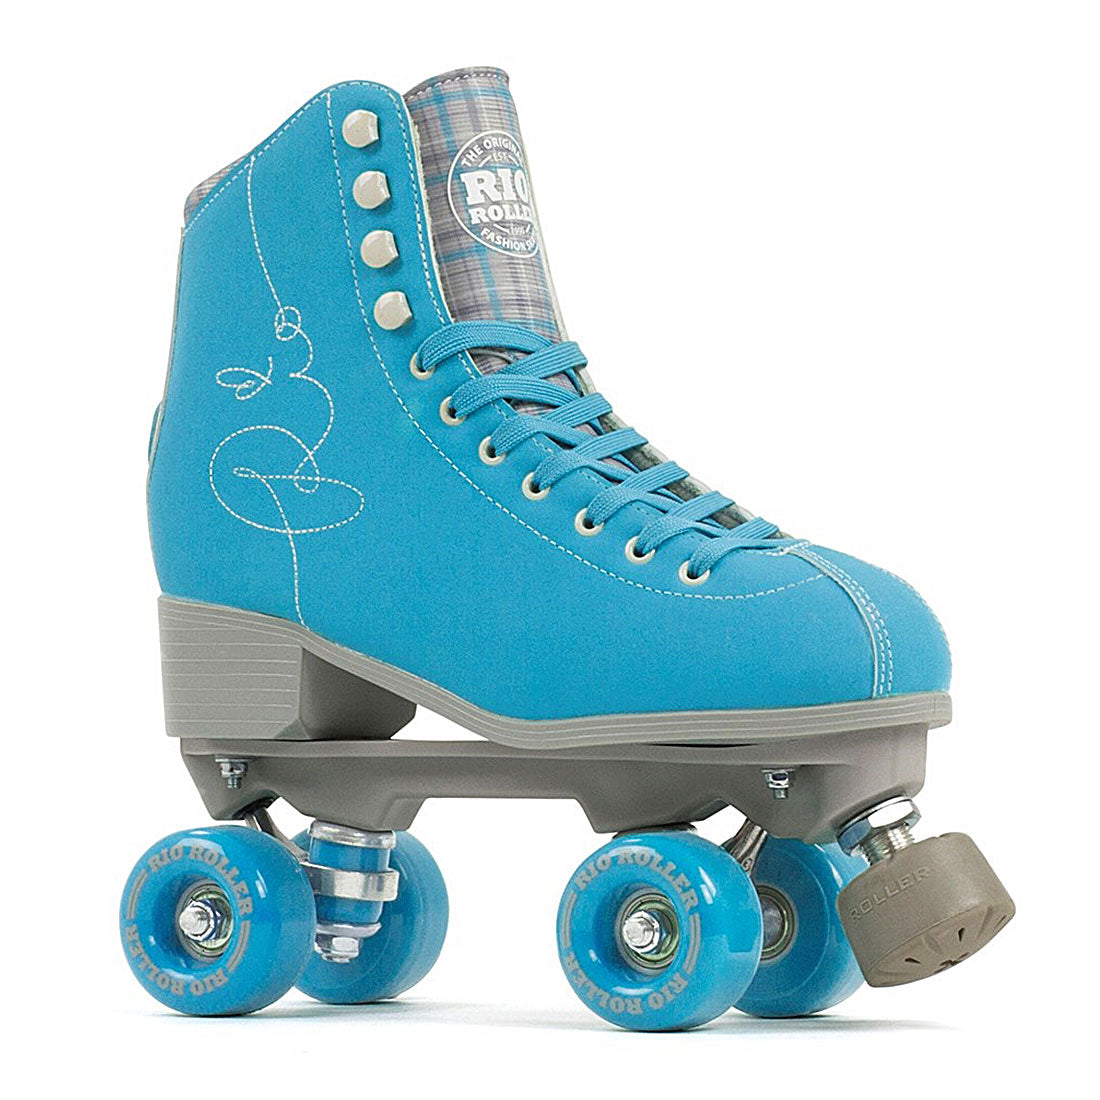 Rio Roller Signature - Blue Roller Skates